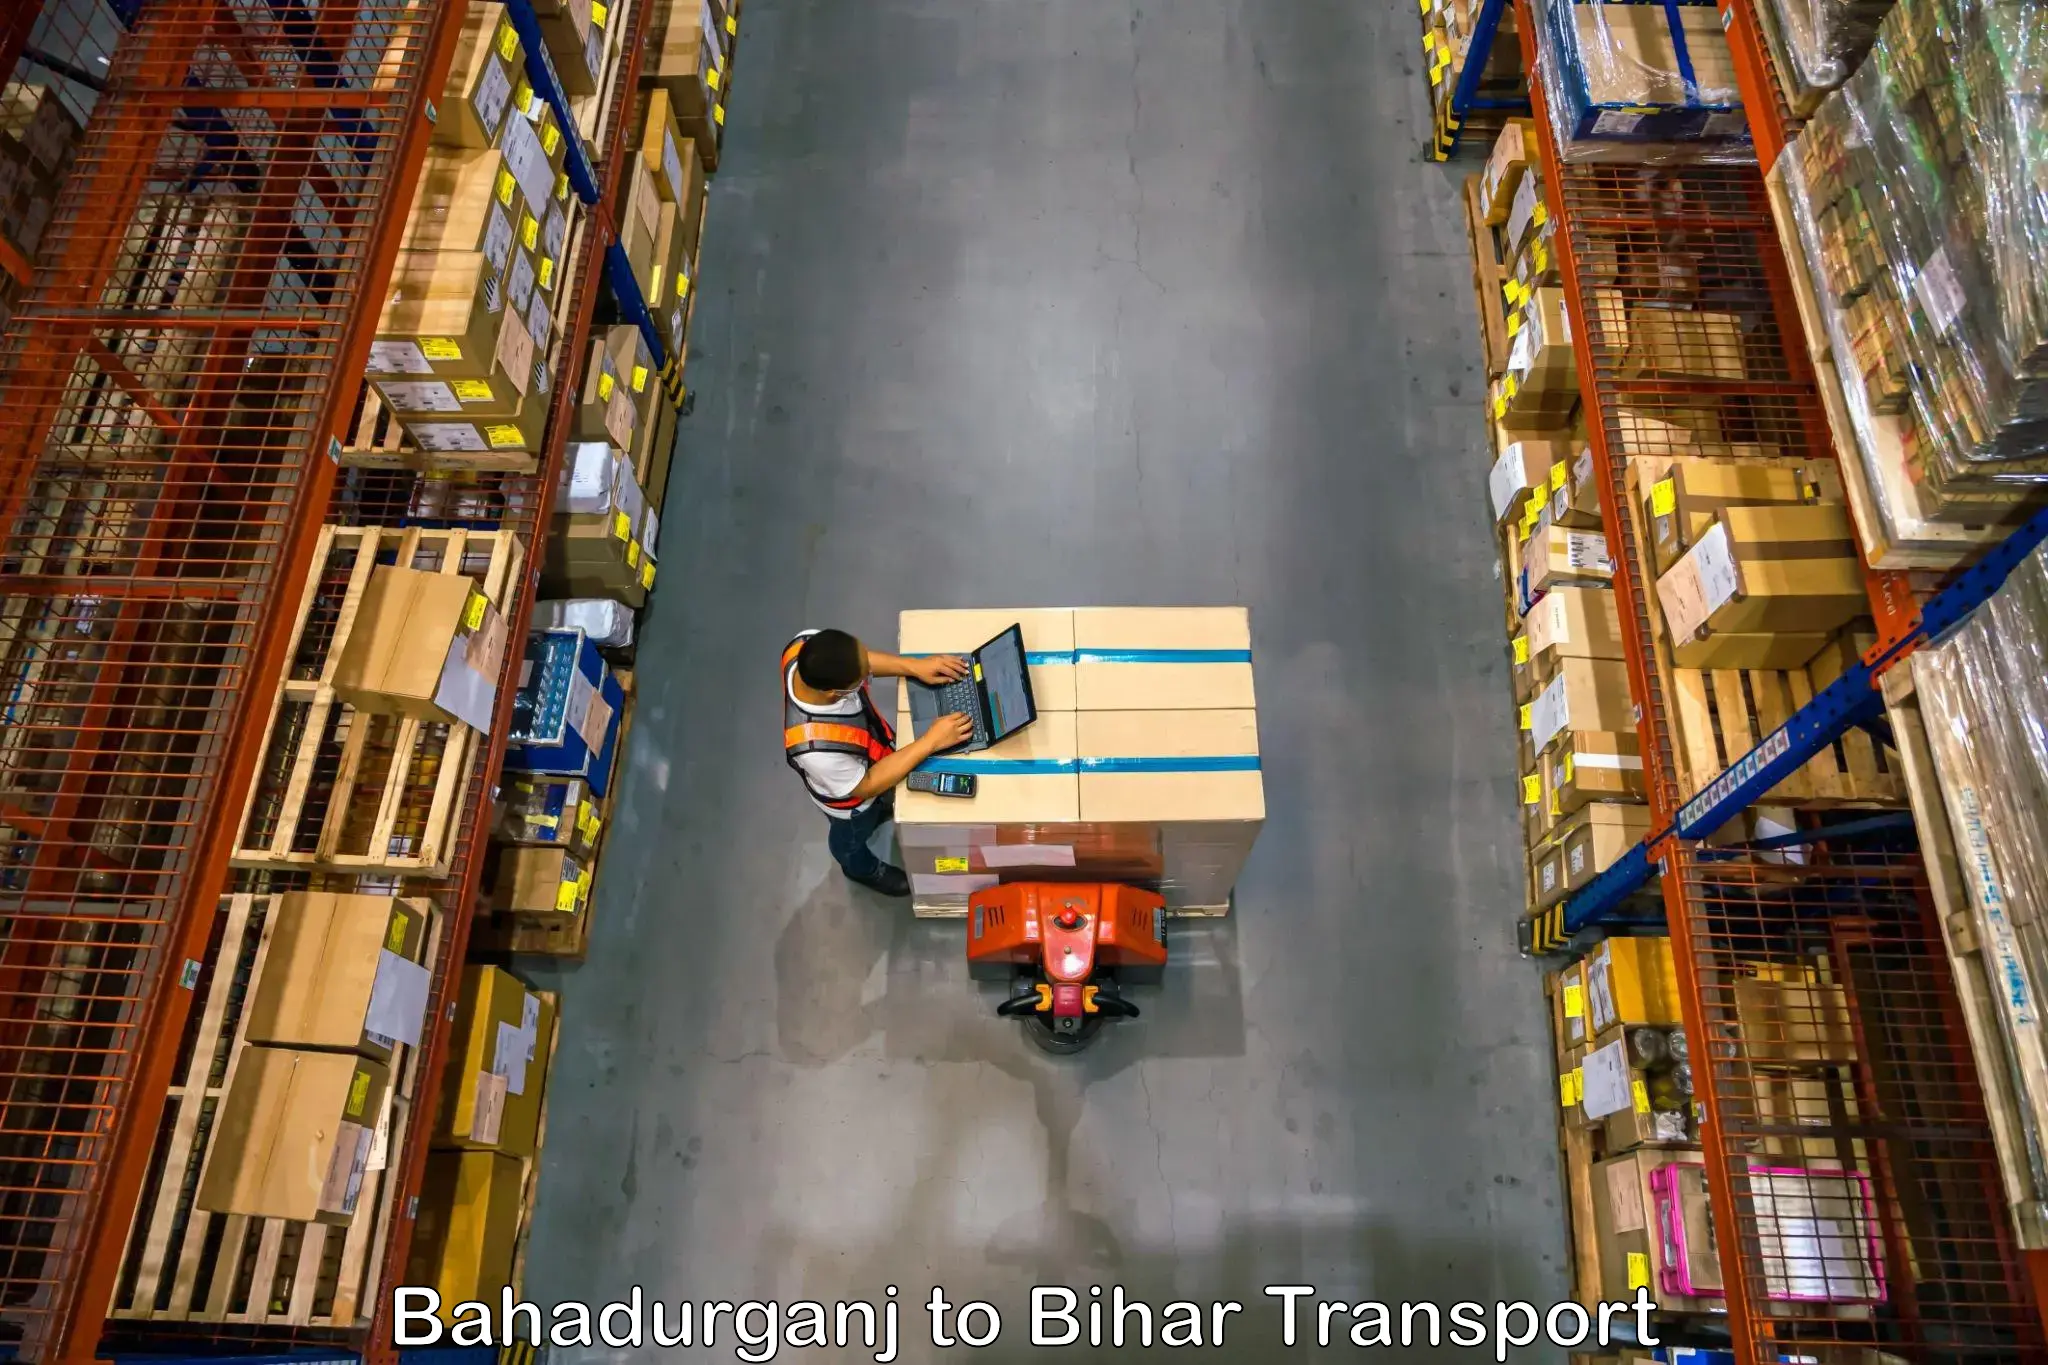 Bike shipping service Bahadurganj to Basopatti